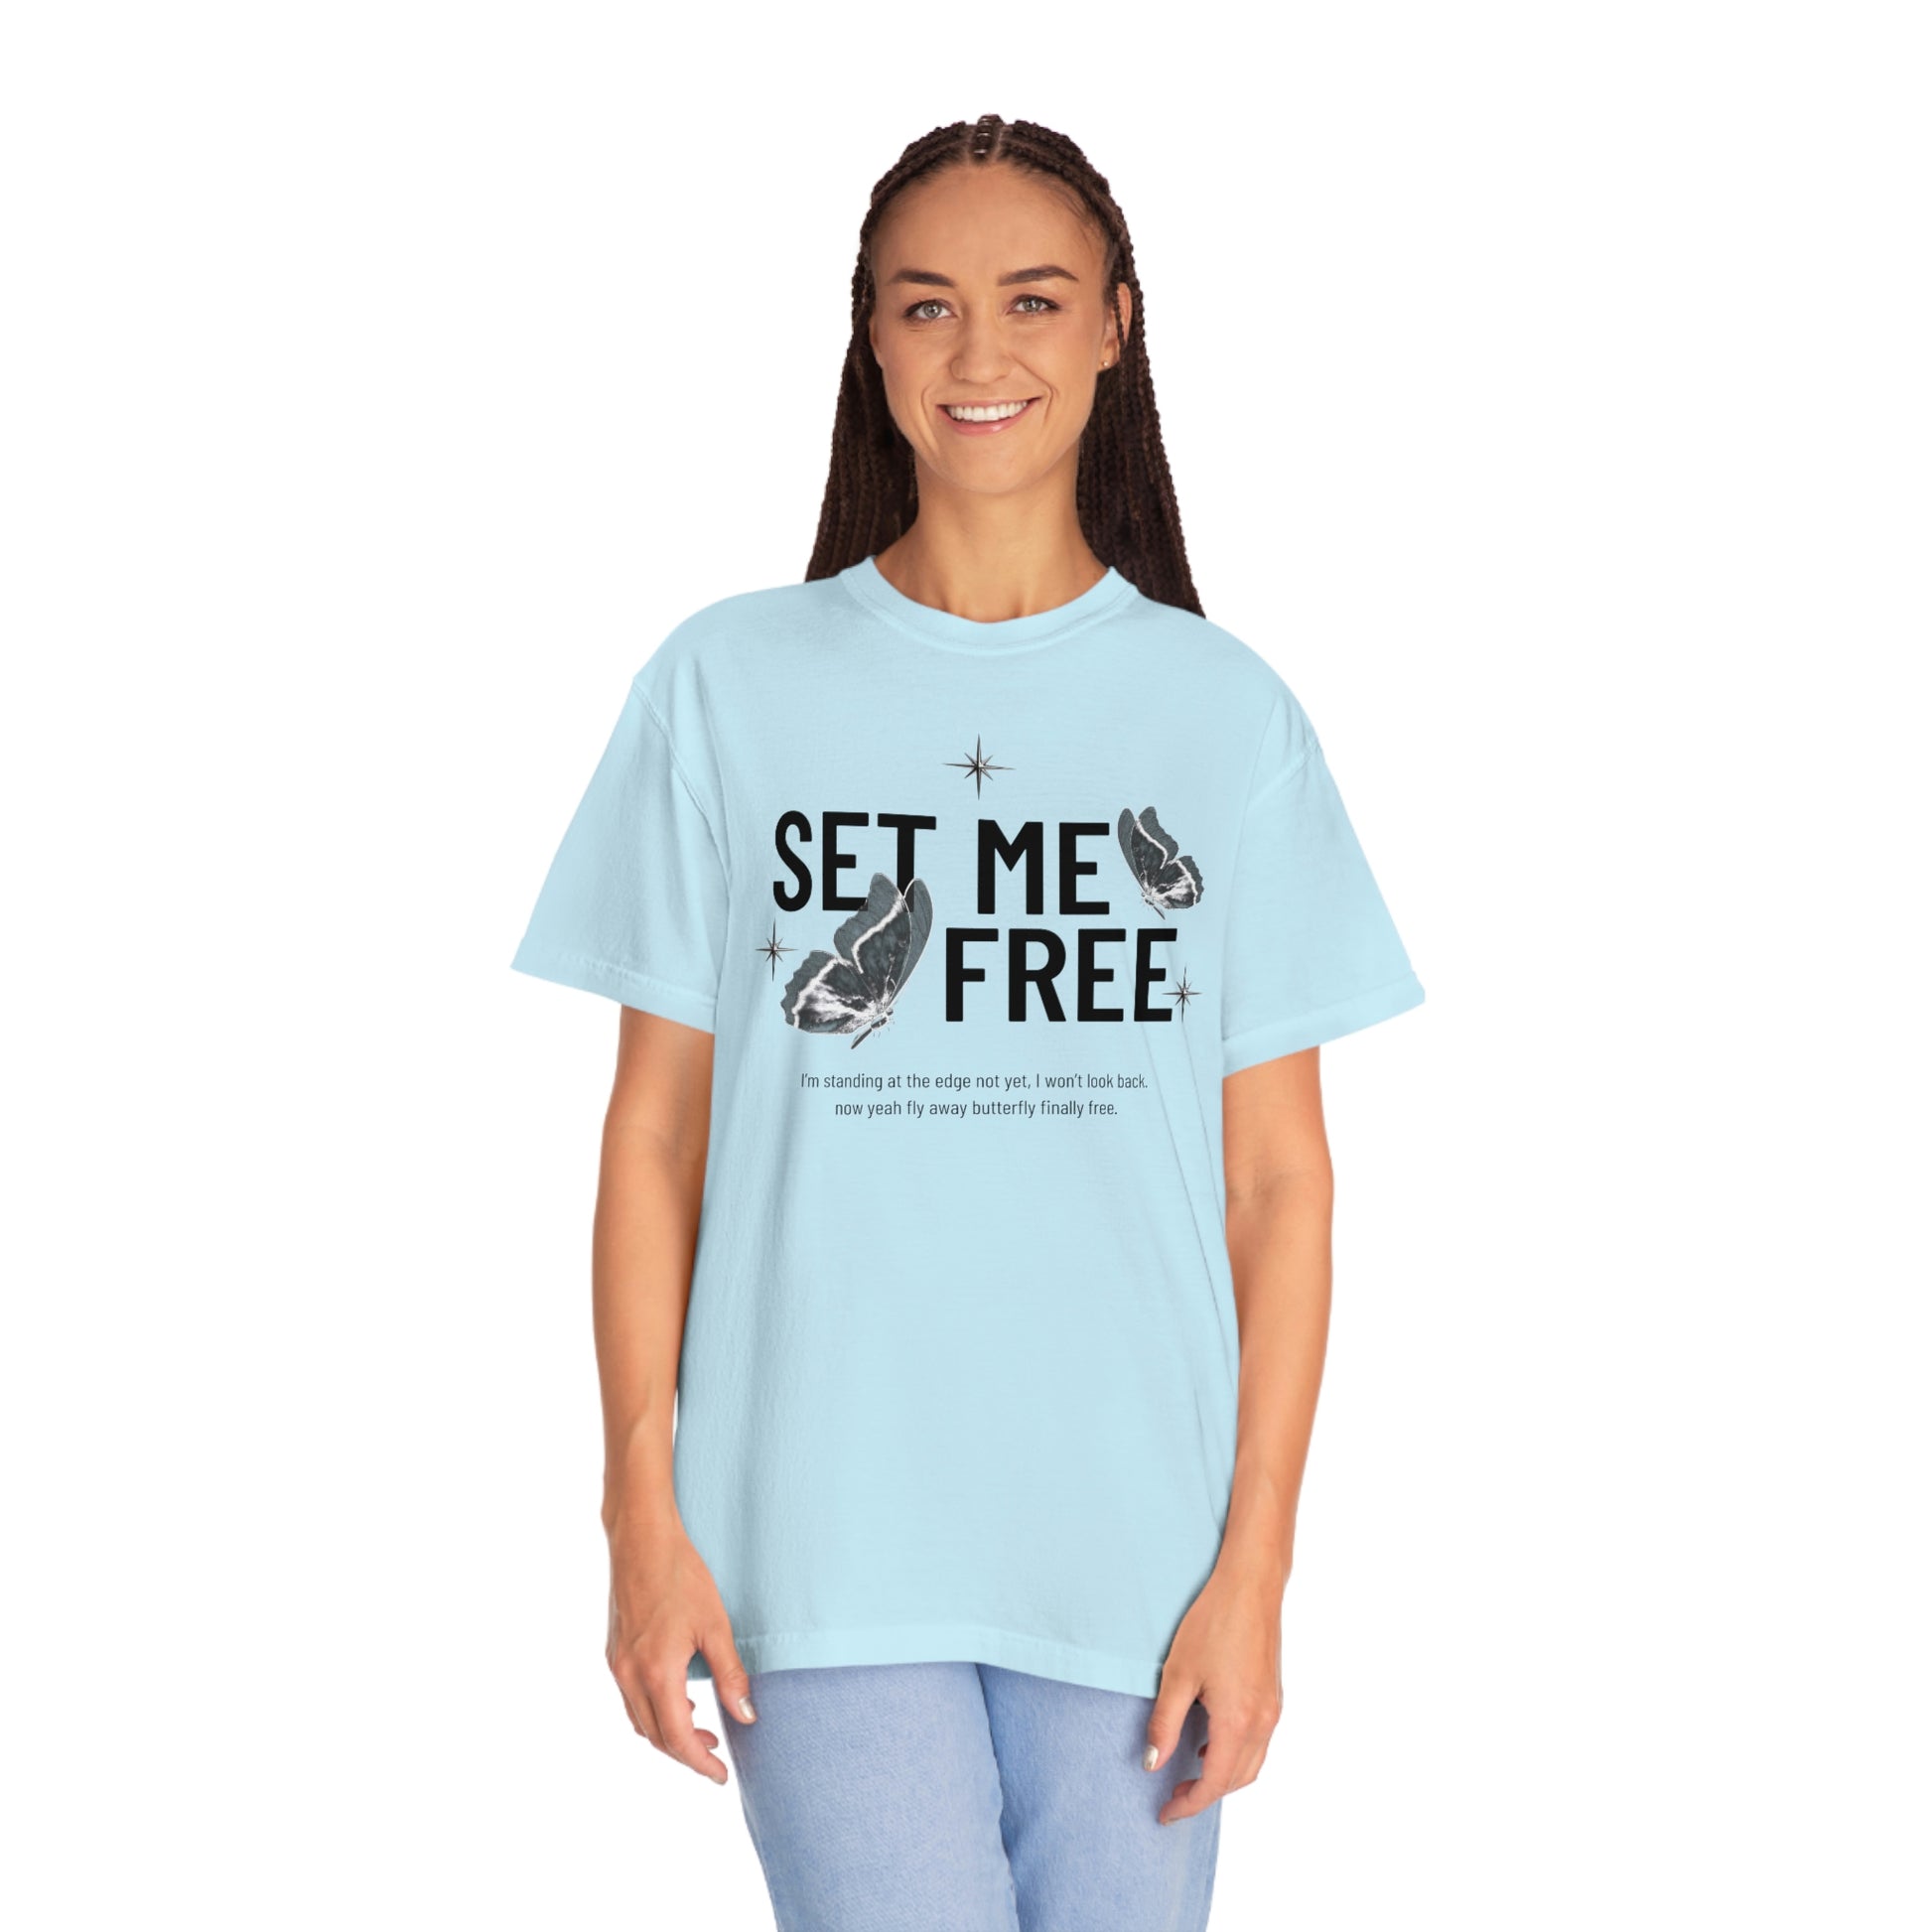 Jimin Set Me Free Pt.2 Tshirt, Rap Tee Jimin Shirt, Set Me Free Pt2  Sweatshirt